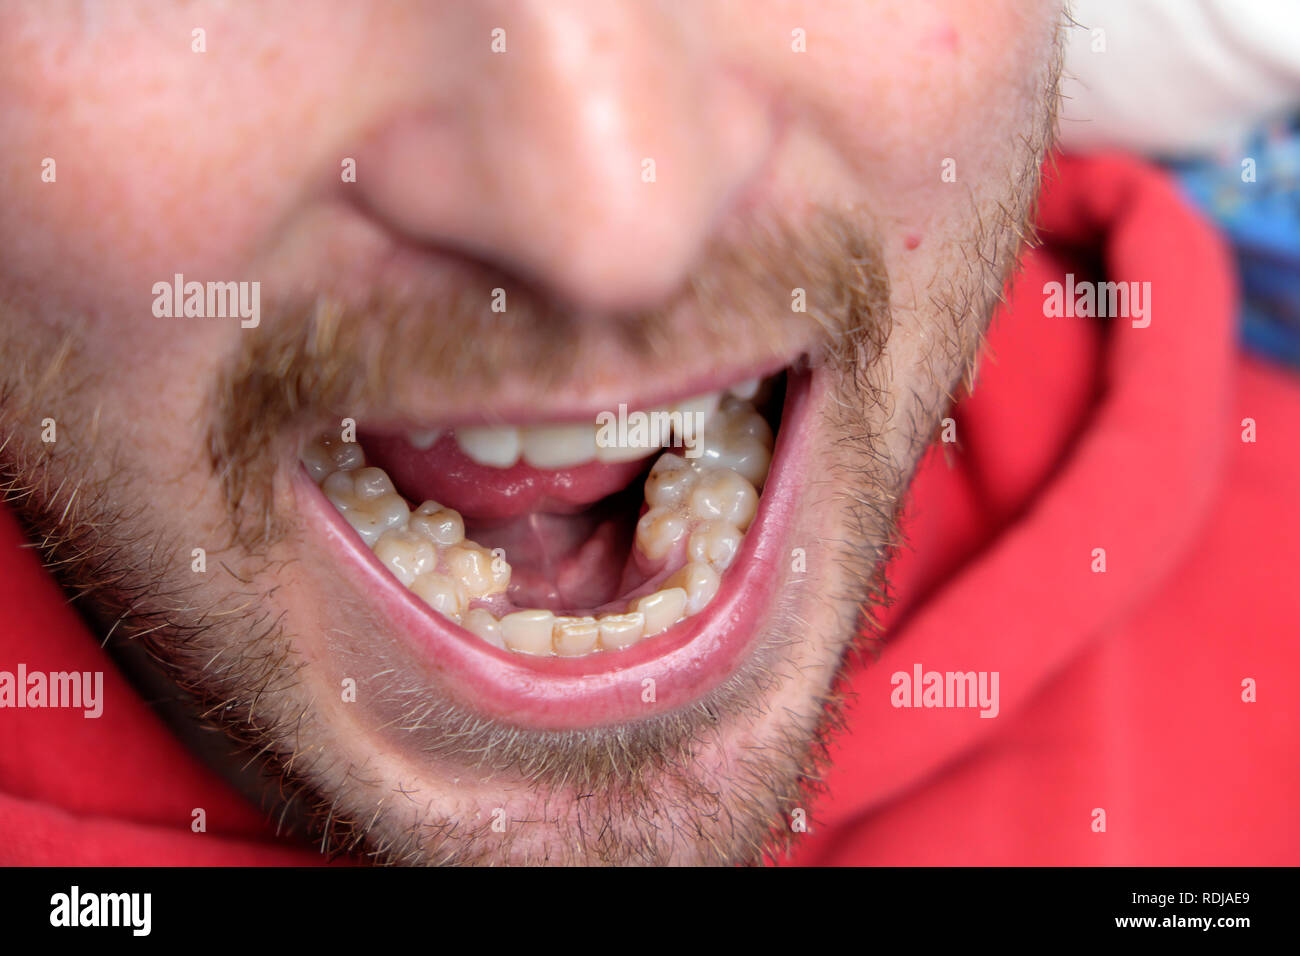 Ein junger Mann mit offenen Mund zeigt seine extra set molaren Prämolaren Statisten prämolar Zähne in Wales UK KATHY DEWITT Stockfoto